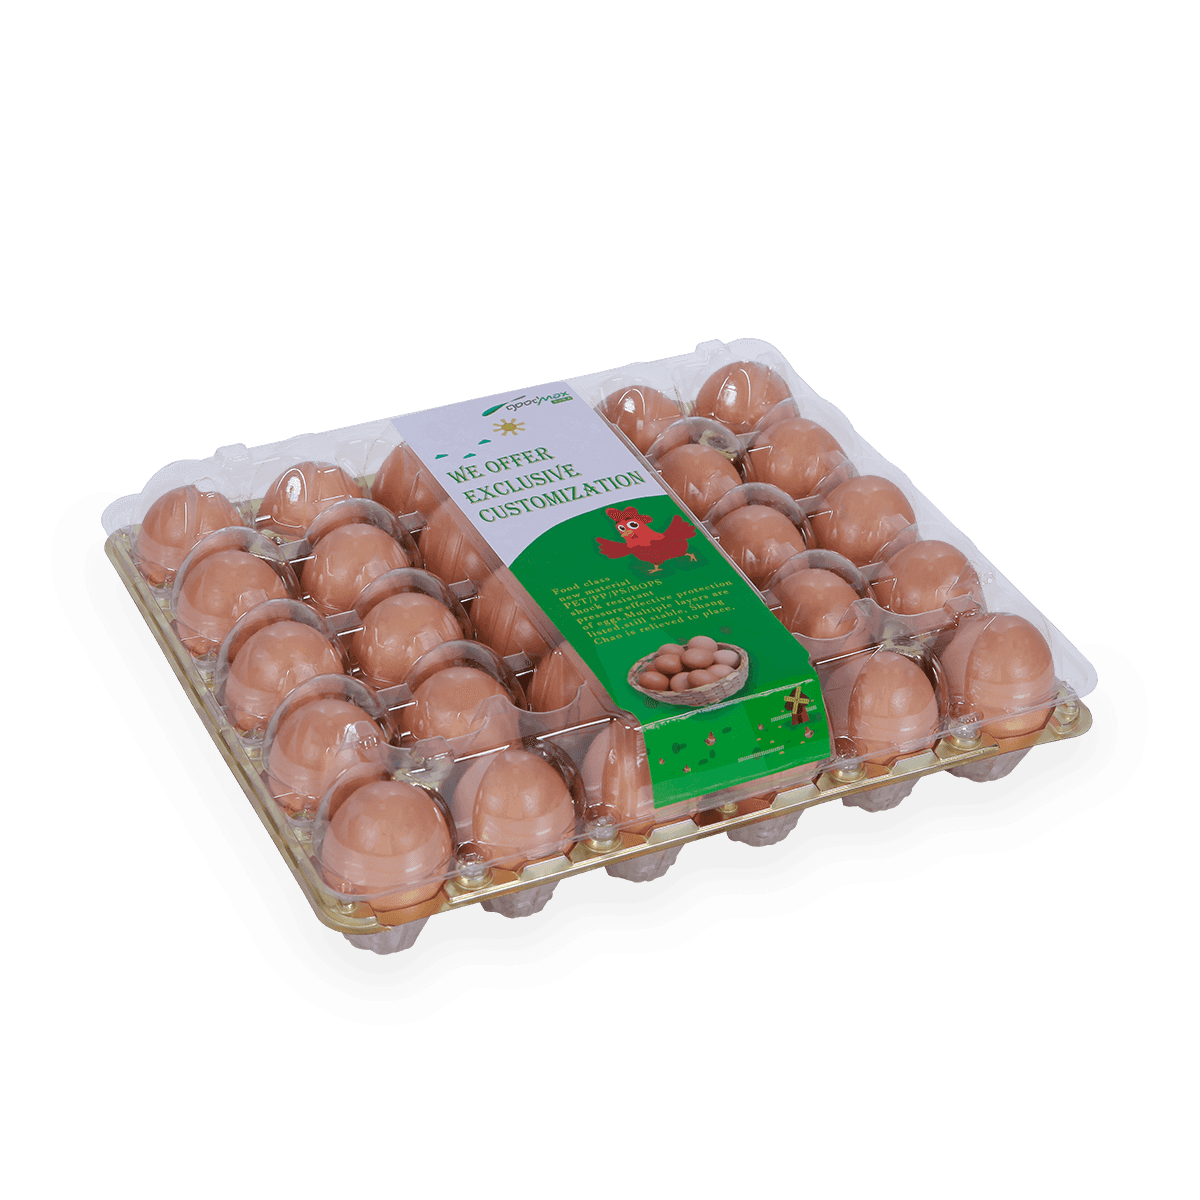 Poultry farm 30 holes cells egg carton